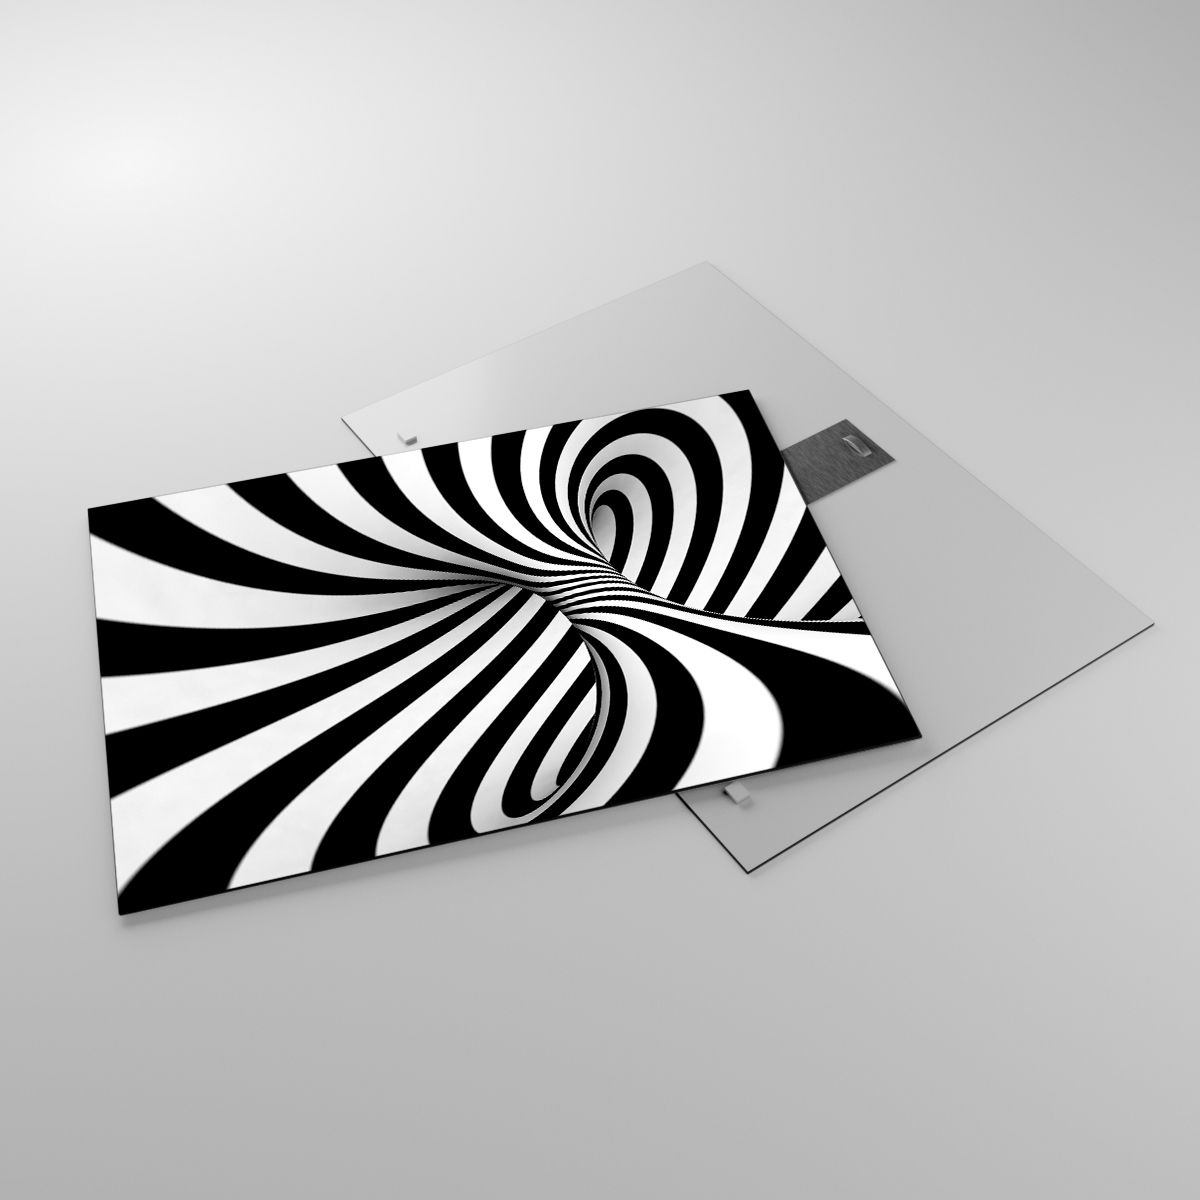 Glasbild Abstraktion, Glasbild 3D, Glasbild Schwarz Und Weiß, Glasbild Wirbel, Glasbild Spiral